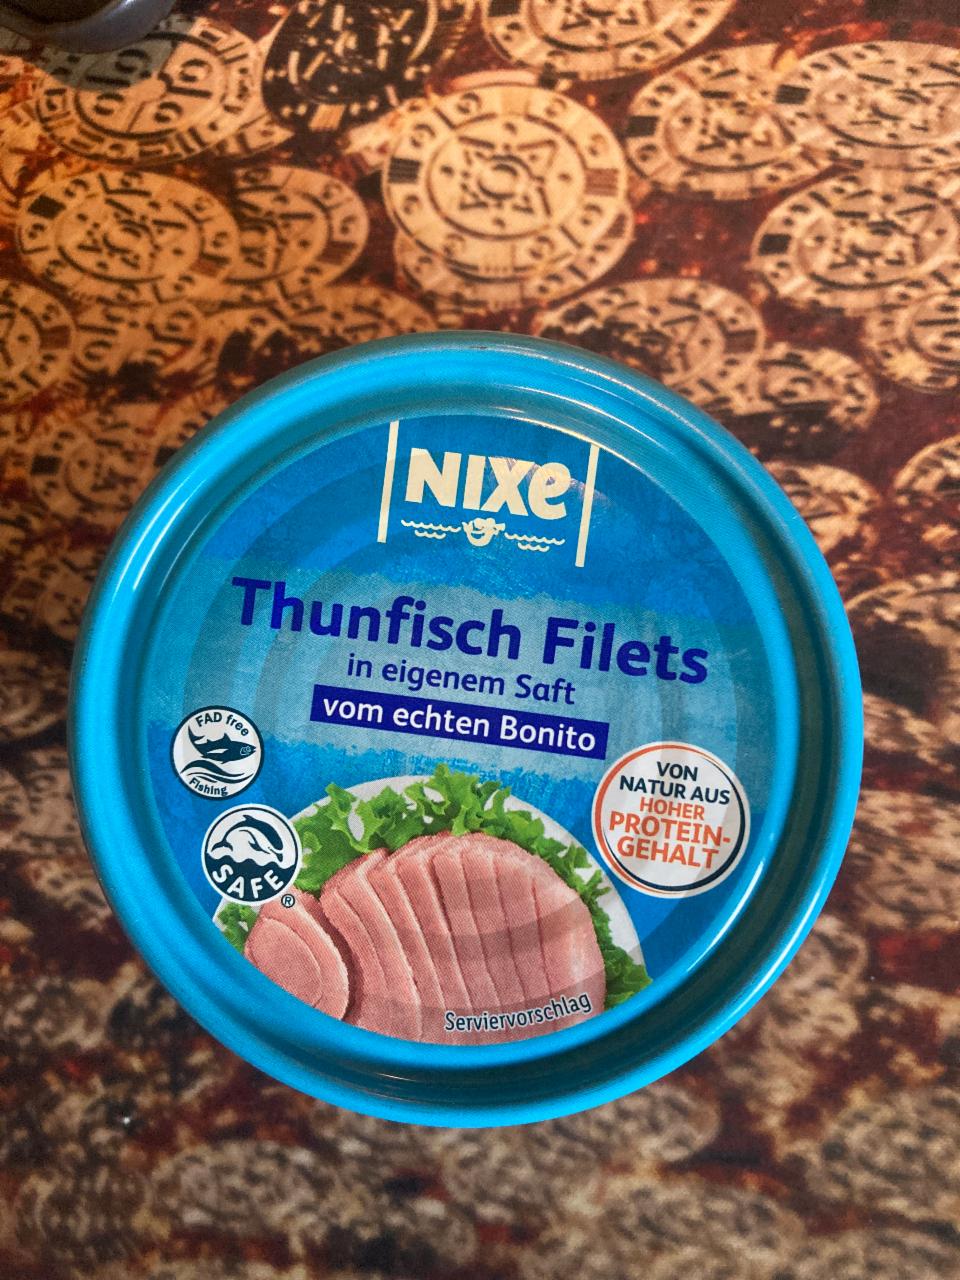 Фото - Thunfisch Filets in eigenen Saft vom echten Bonito Nixe